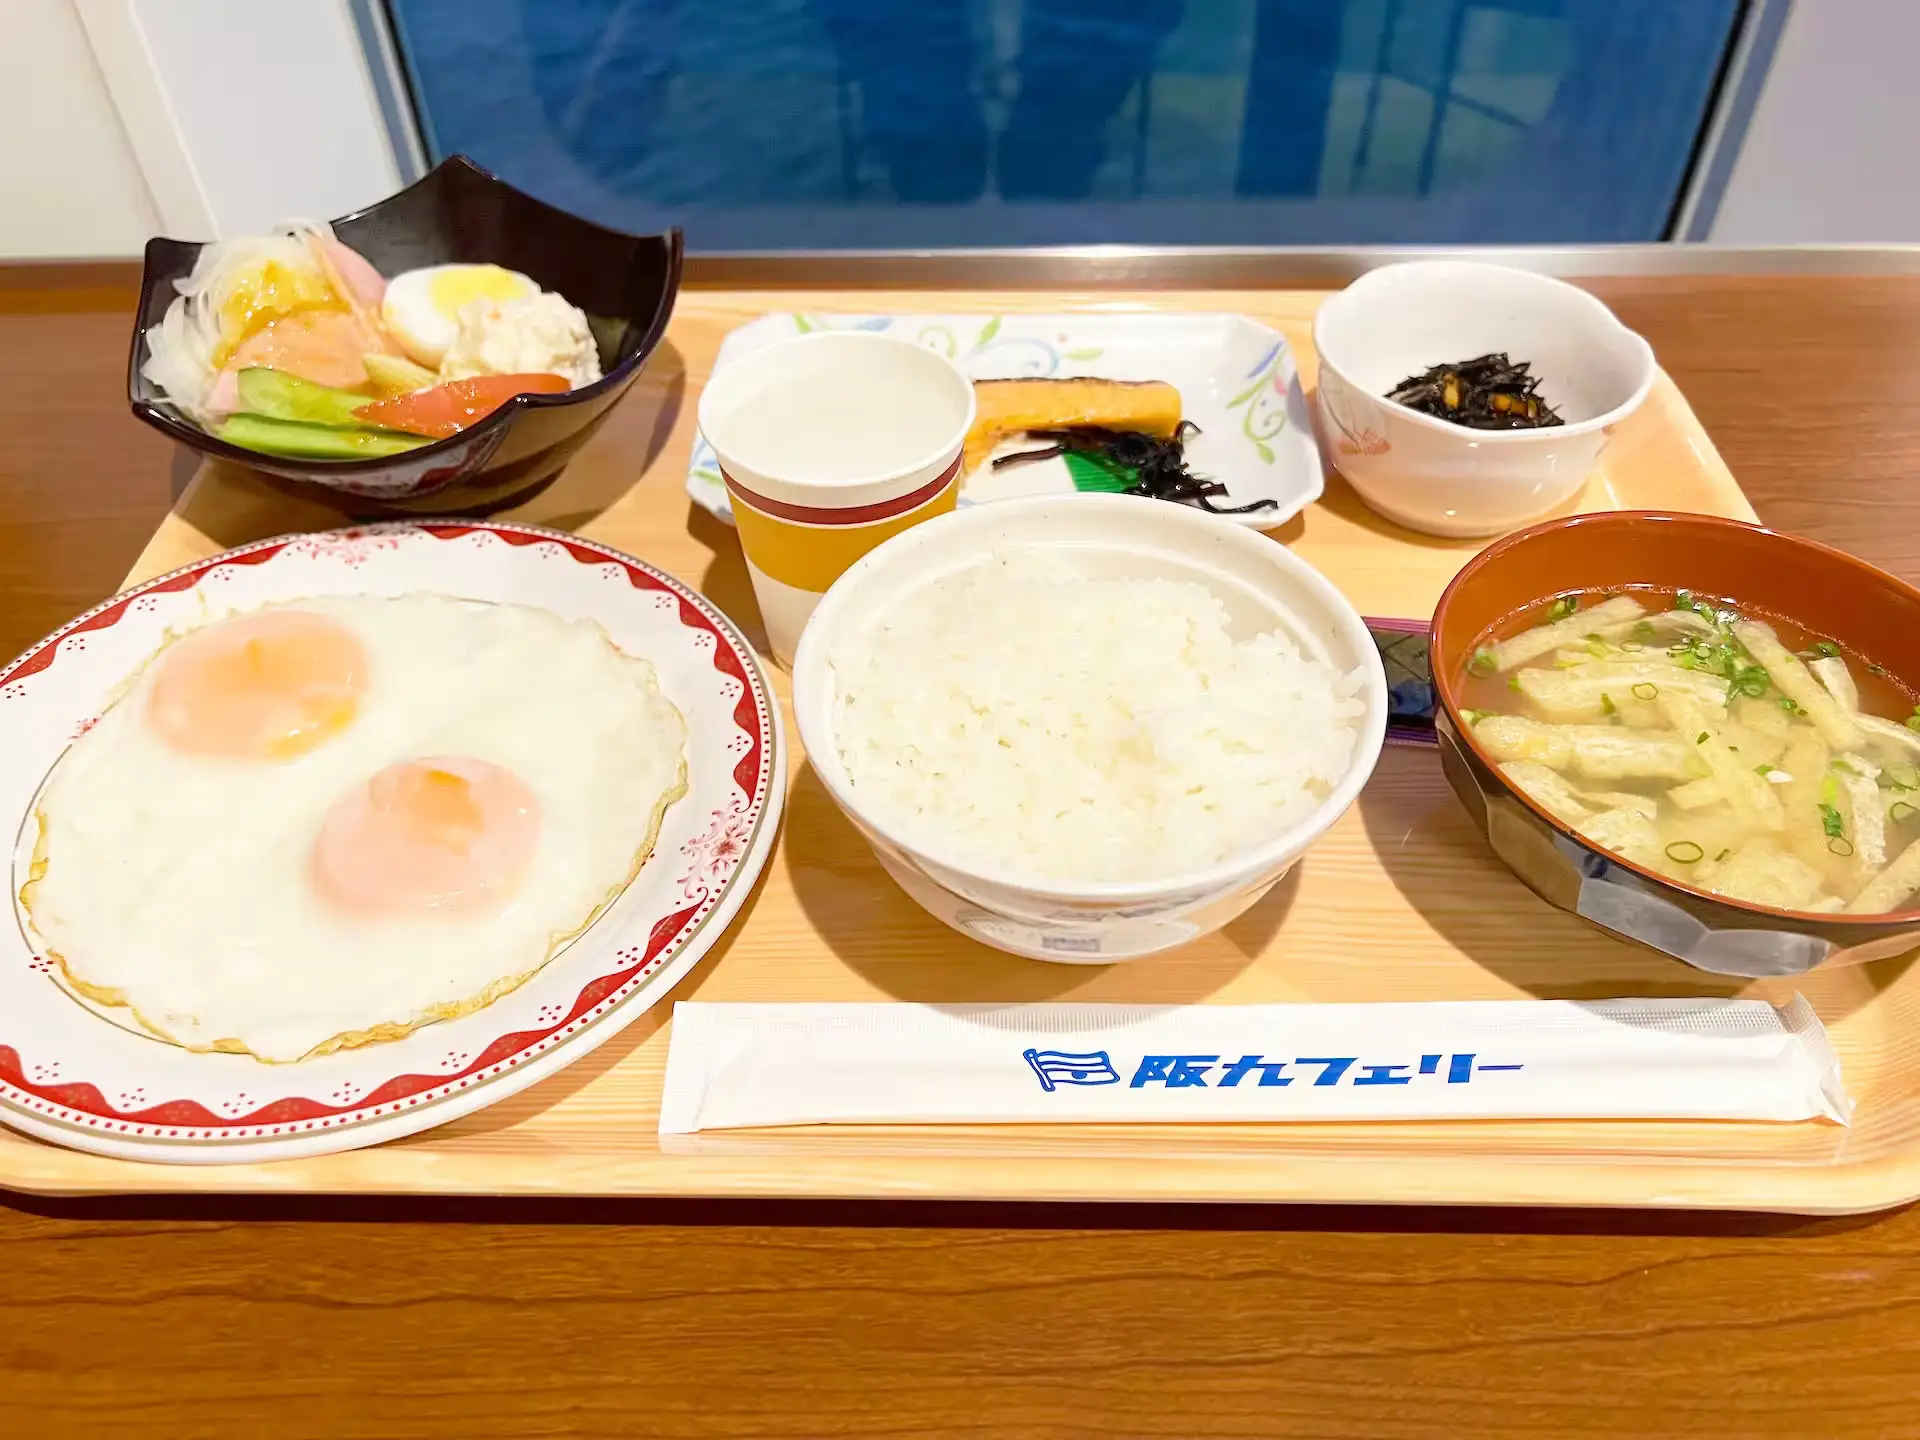 阪九フェリーやまと船内レストランの朝食料理